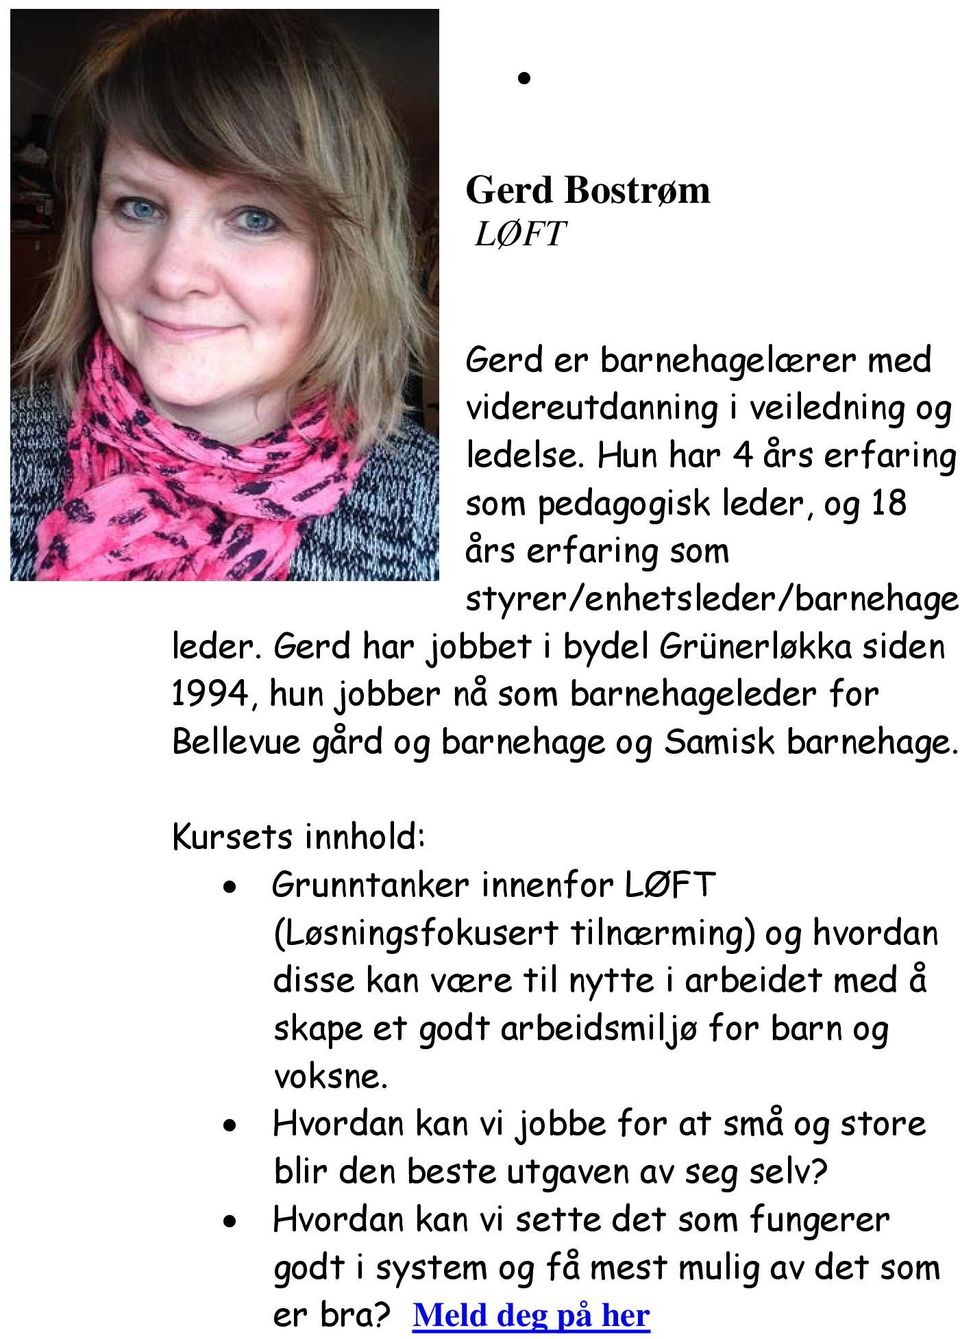 Gerd har jobbet i bydel Grünerløkka siden 1994, hun jobber nå som barnehageleder for Bellevue gård og barnehage og Samisk barnehage.